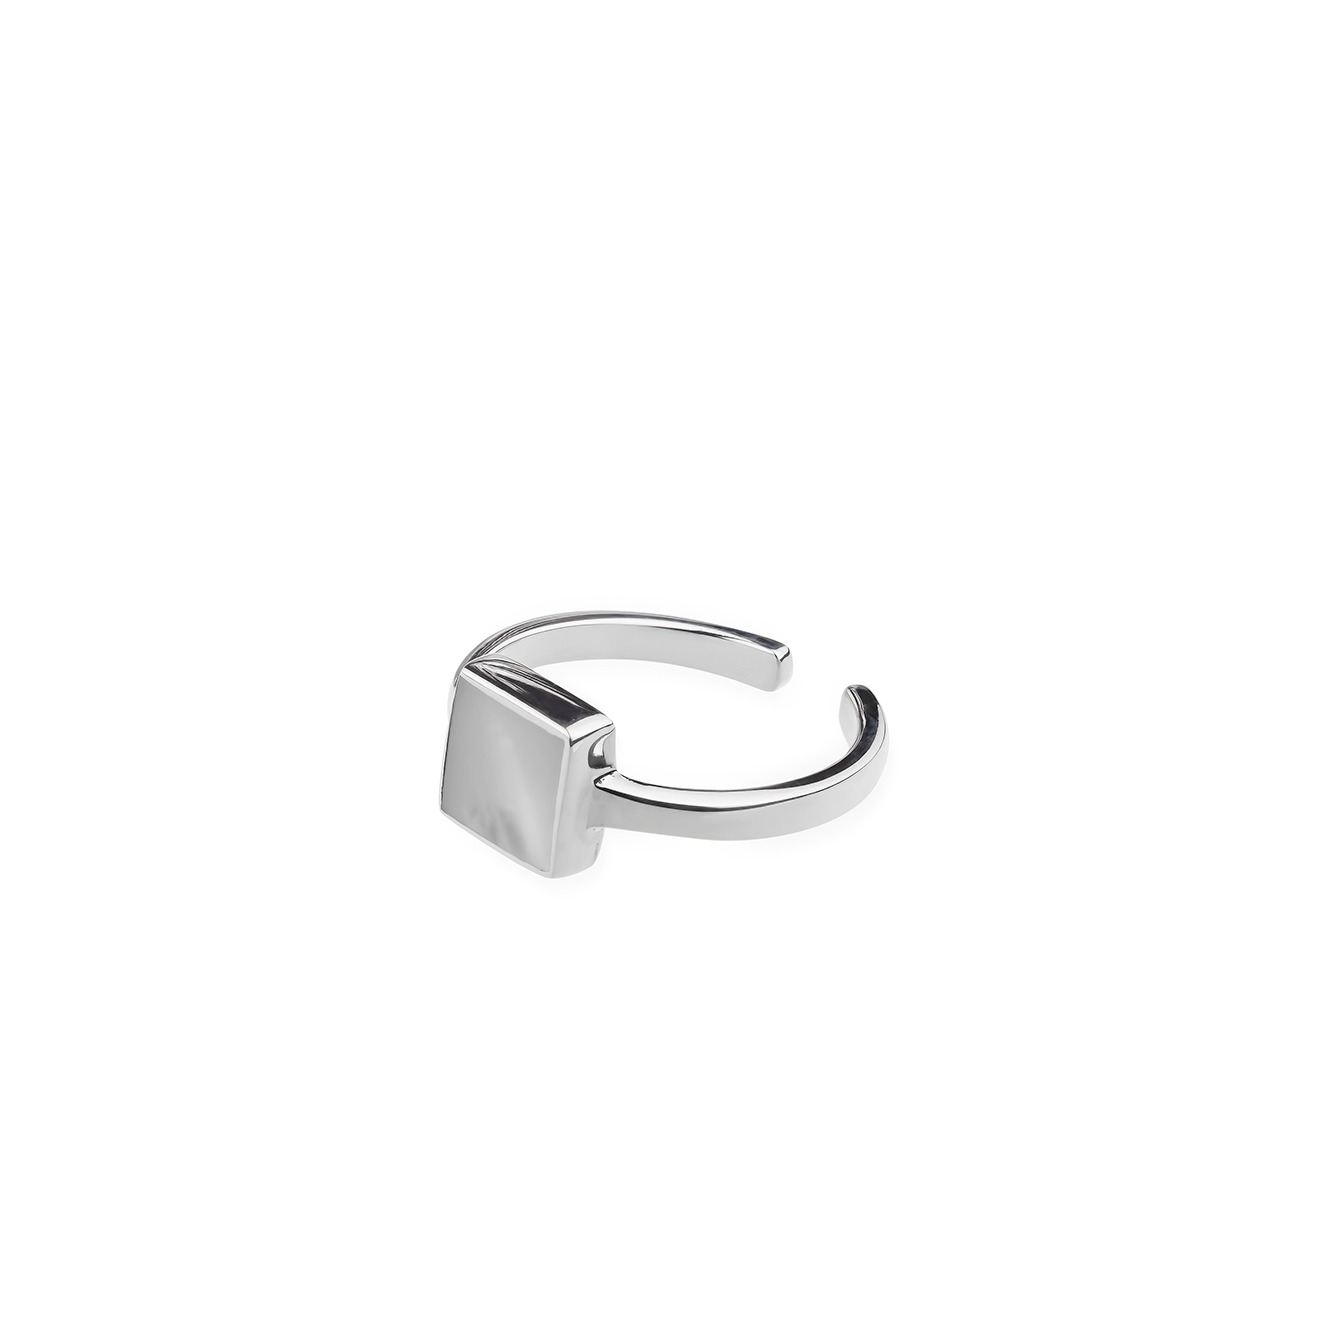 Wishes Come True Незамкнутое кольцо с квадратом из серебра со светлым плоским перламутром